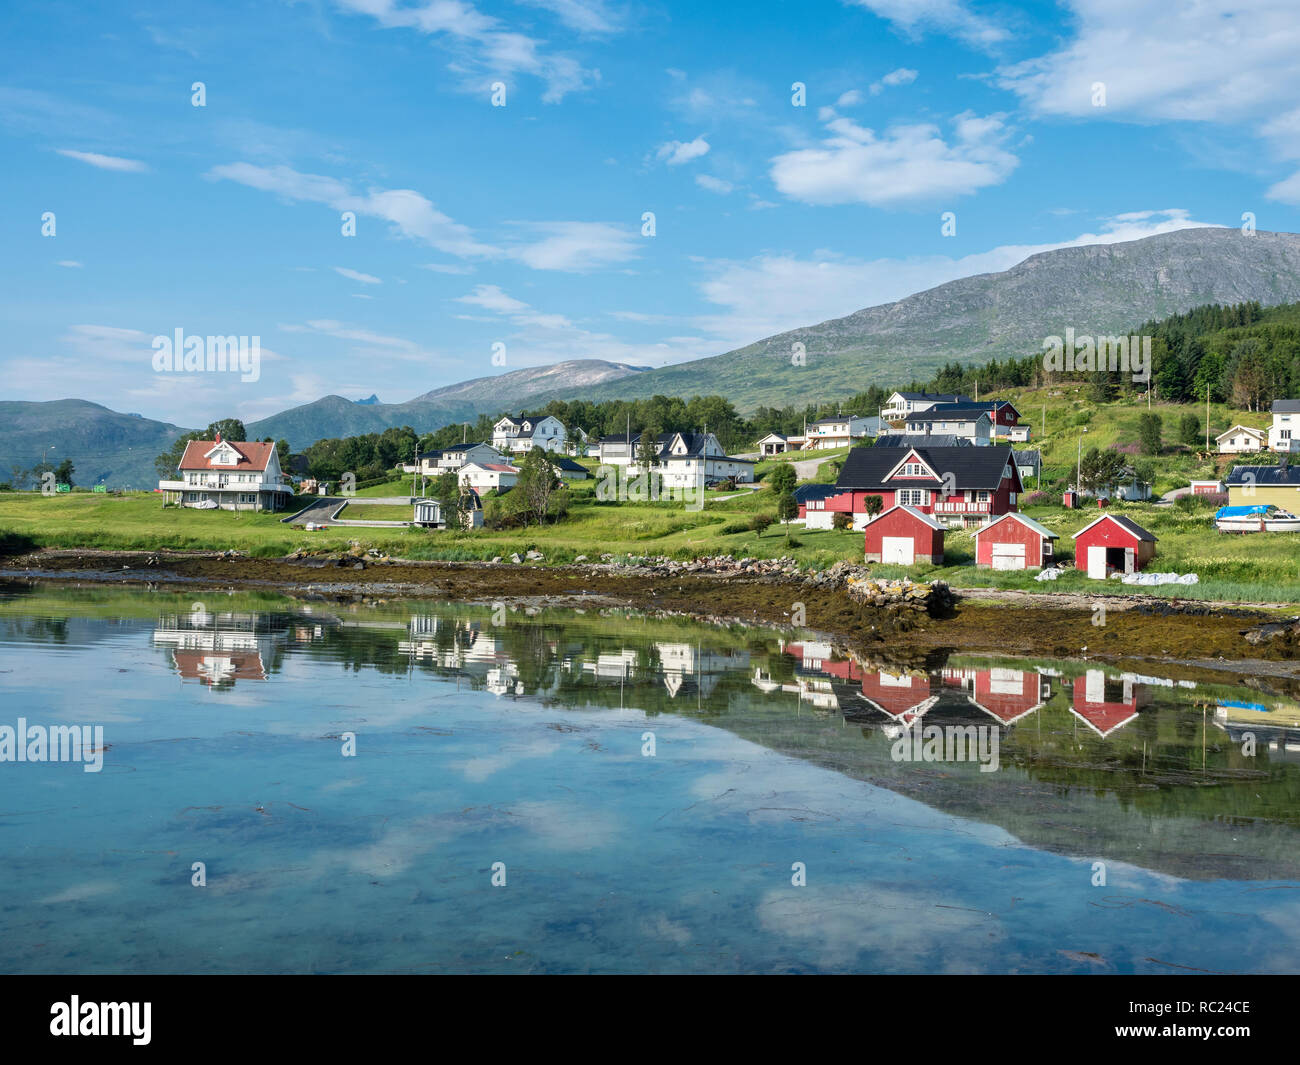 Botnham, presso il traghetto kai, barca capannoni e case, riflessioni sul mare calmo, Senja, Troms, Norvegia Foto Stock